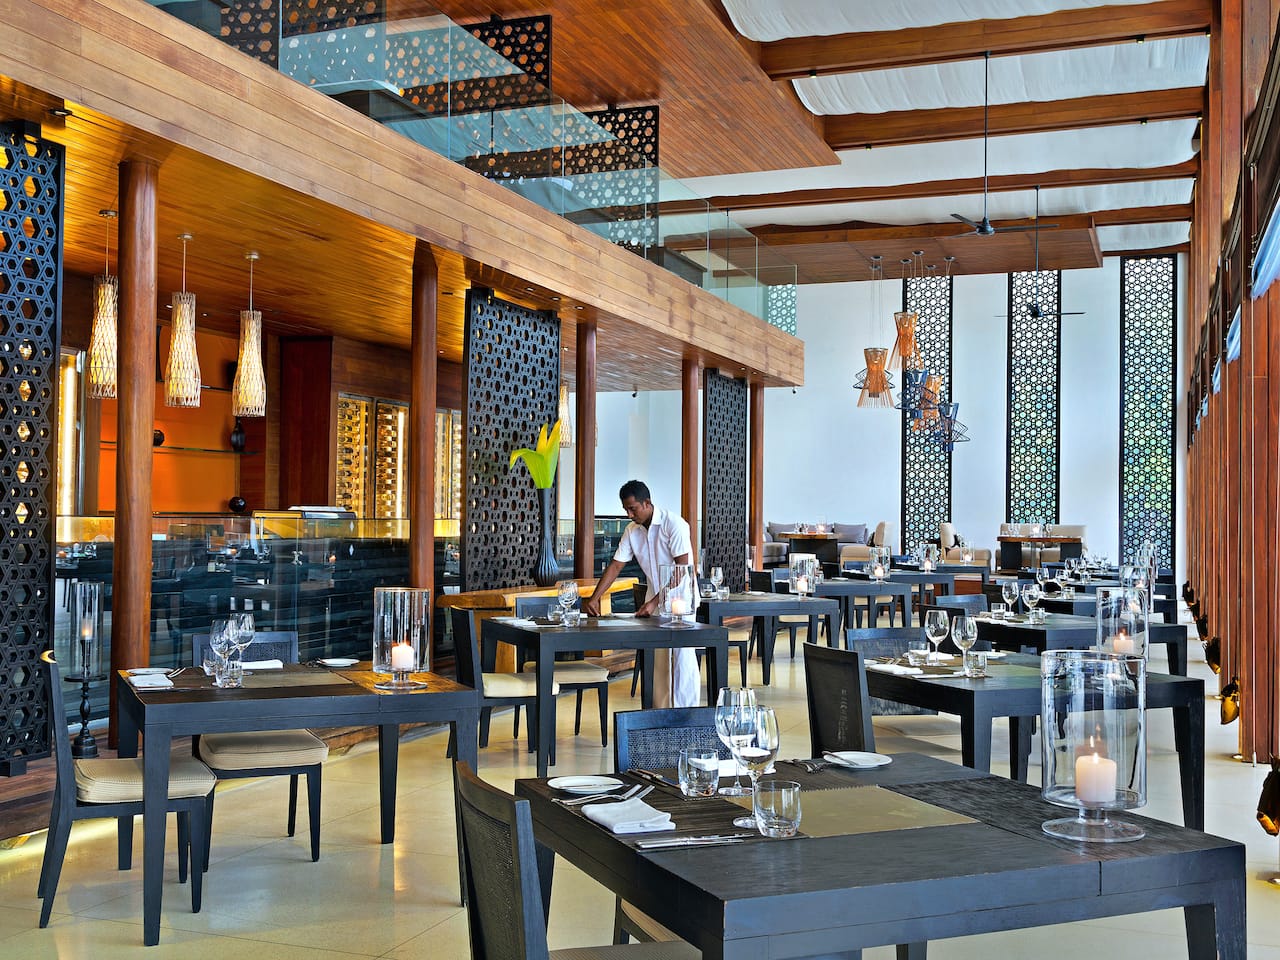 5-star Maldives Resort Restaurant – The Dining Room